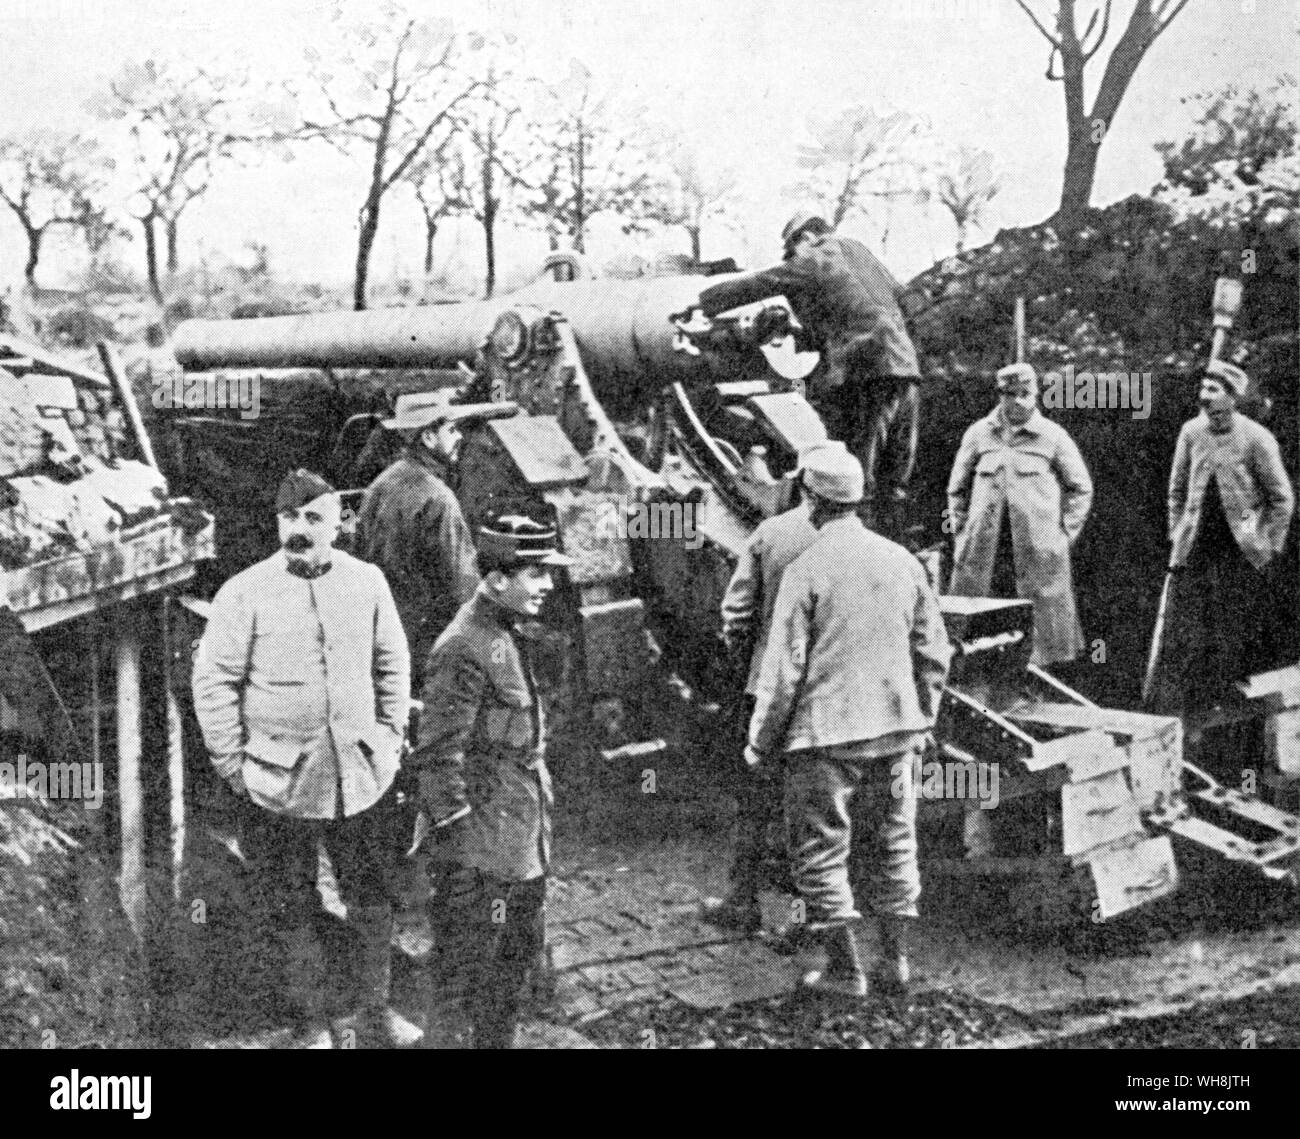 155 Francés en Verdún. Ambos bandos utilizaron enorme cañón para pulverizar al enemigo en sus trincheras y fortificaciones a lo largo del frente occidental Foto de stock